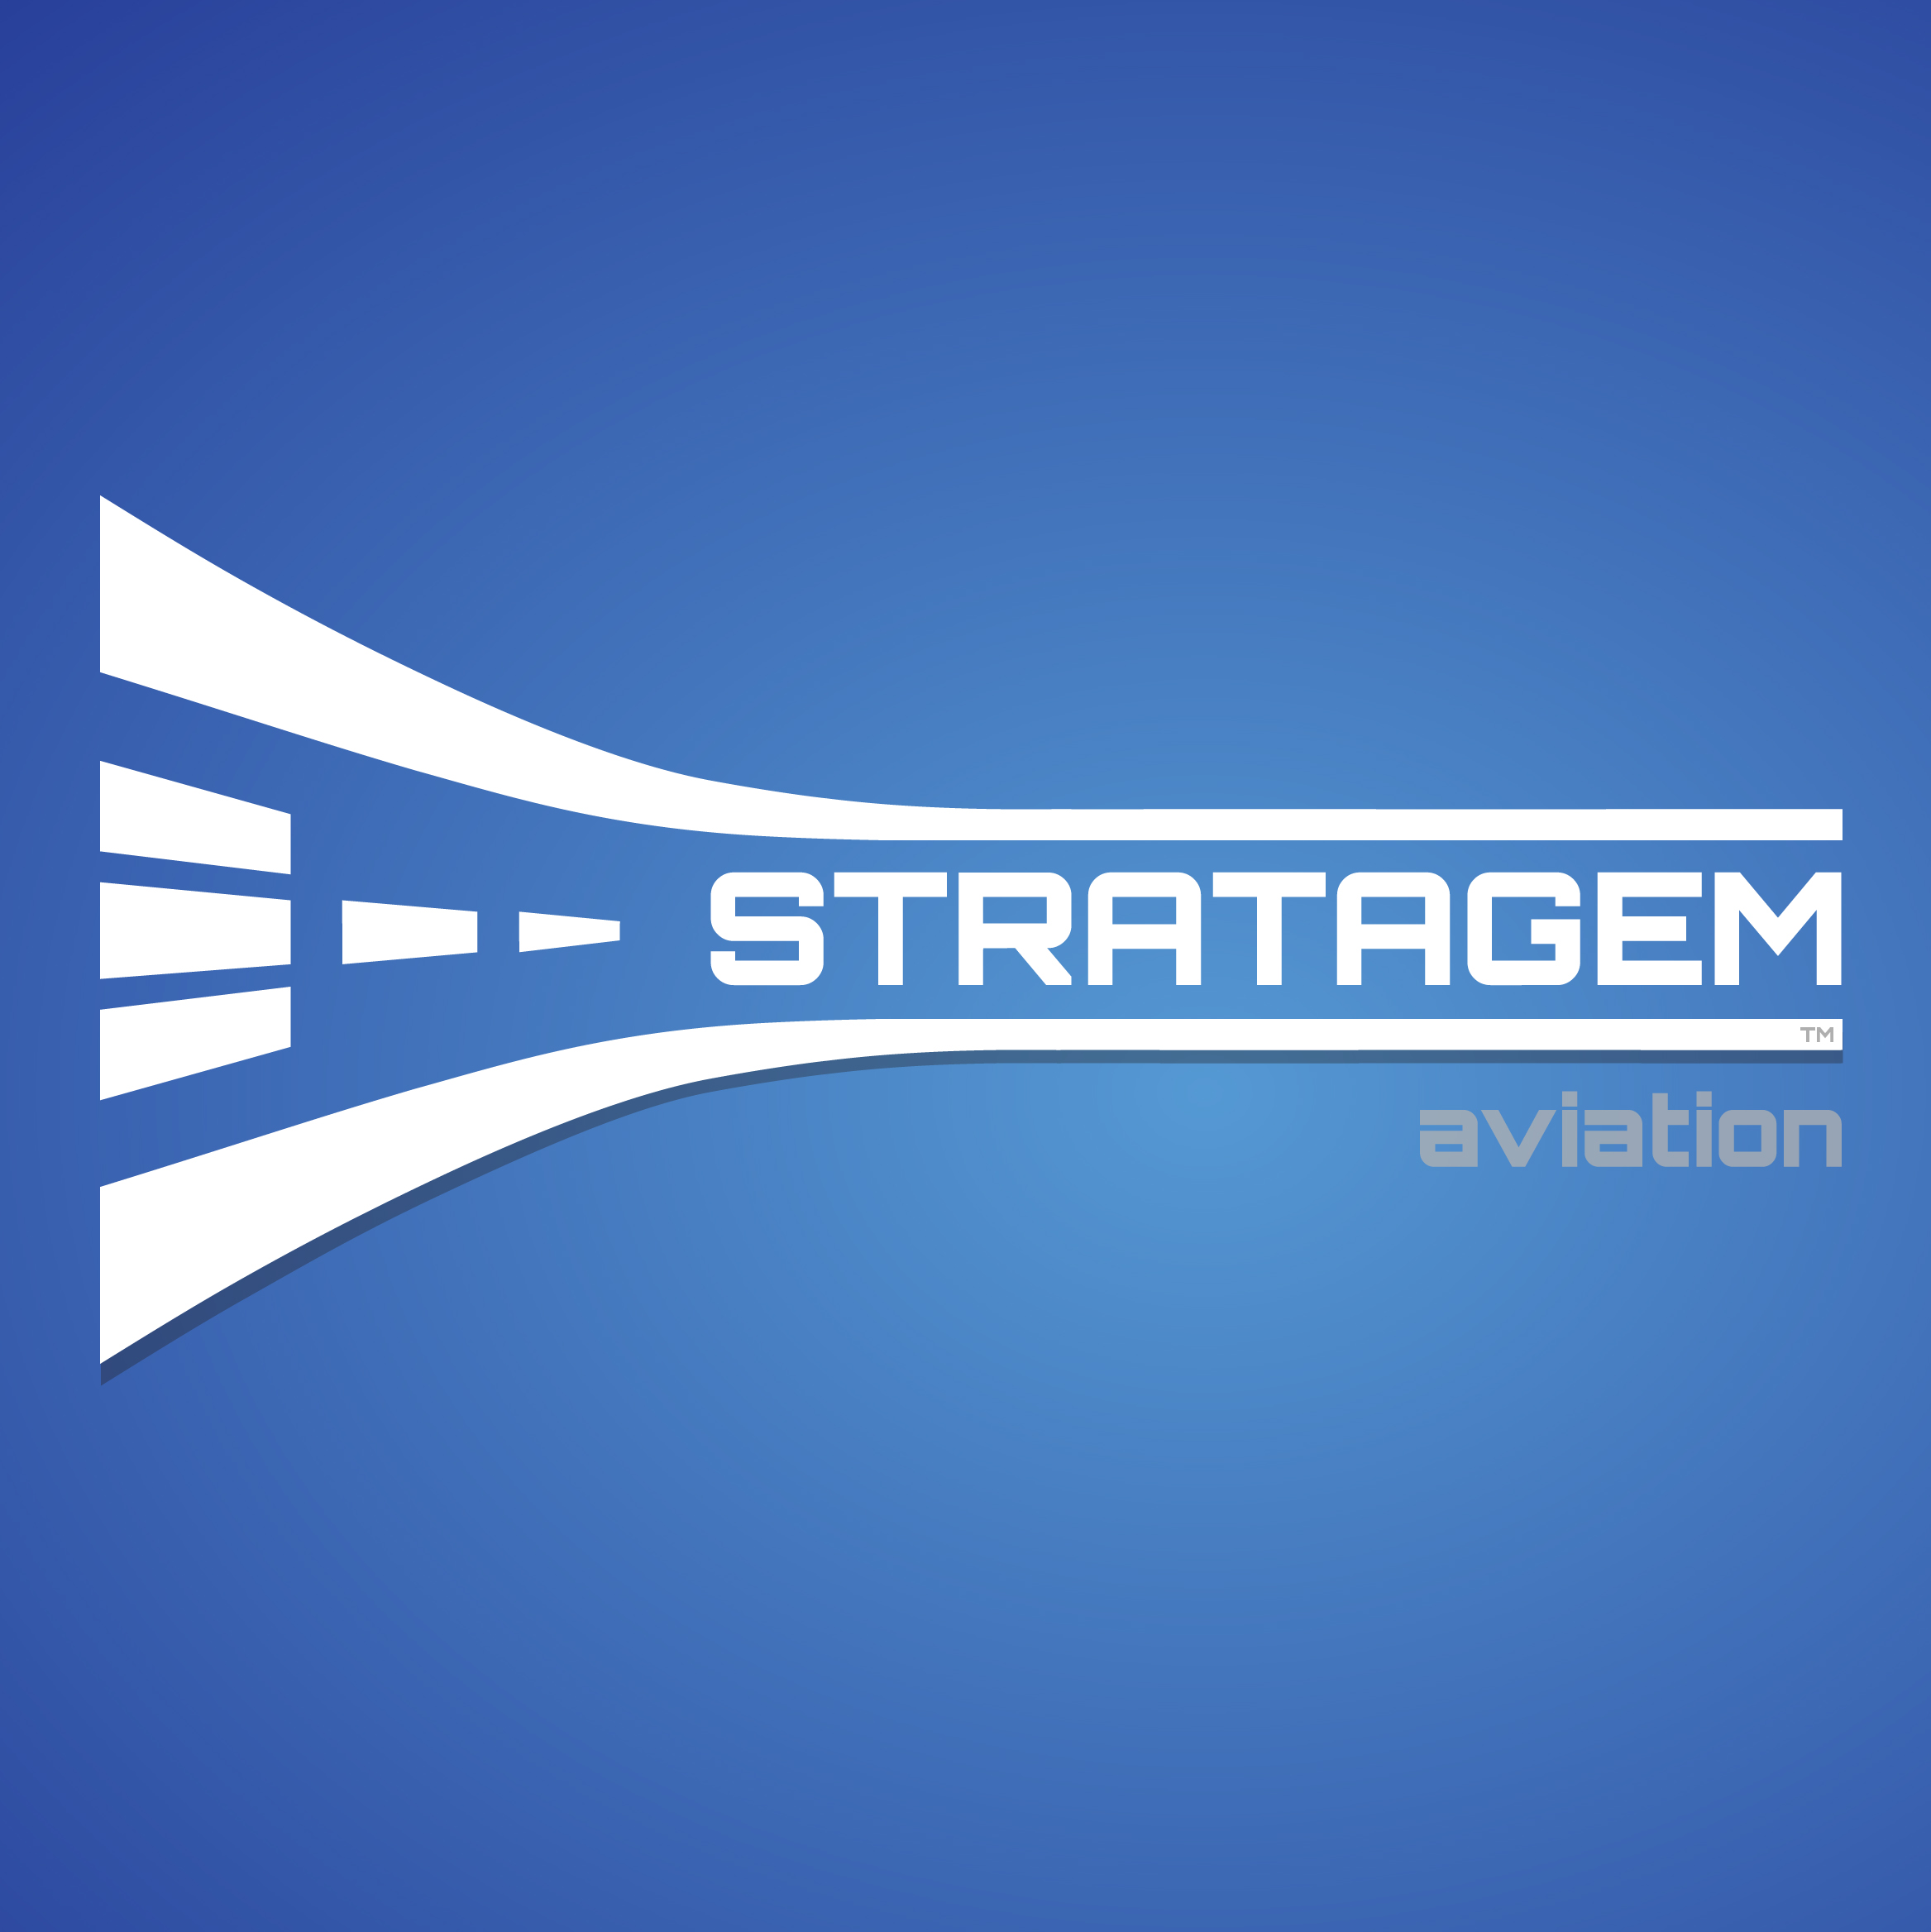 STRATAGEM Aviation, LLC.